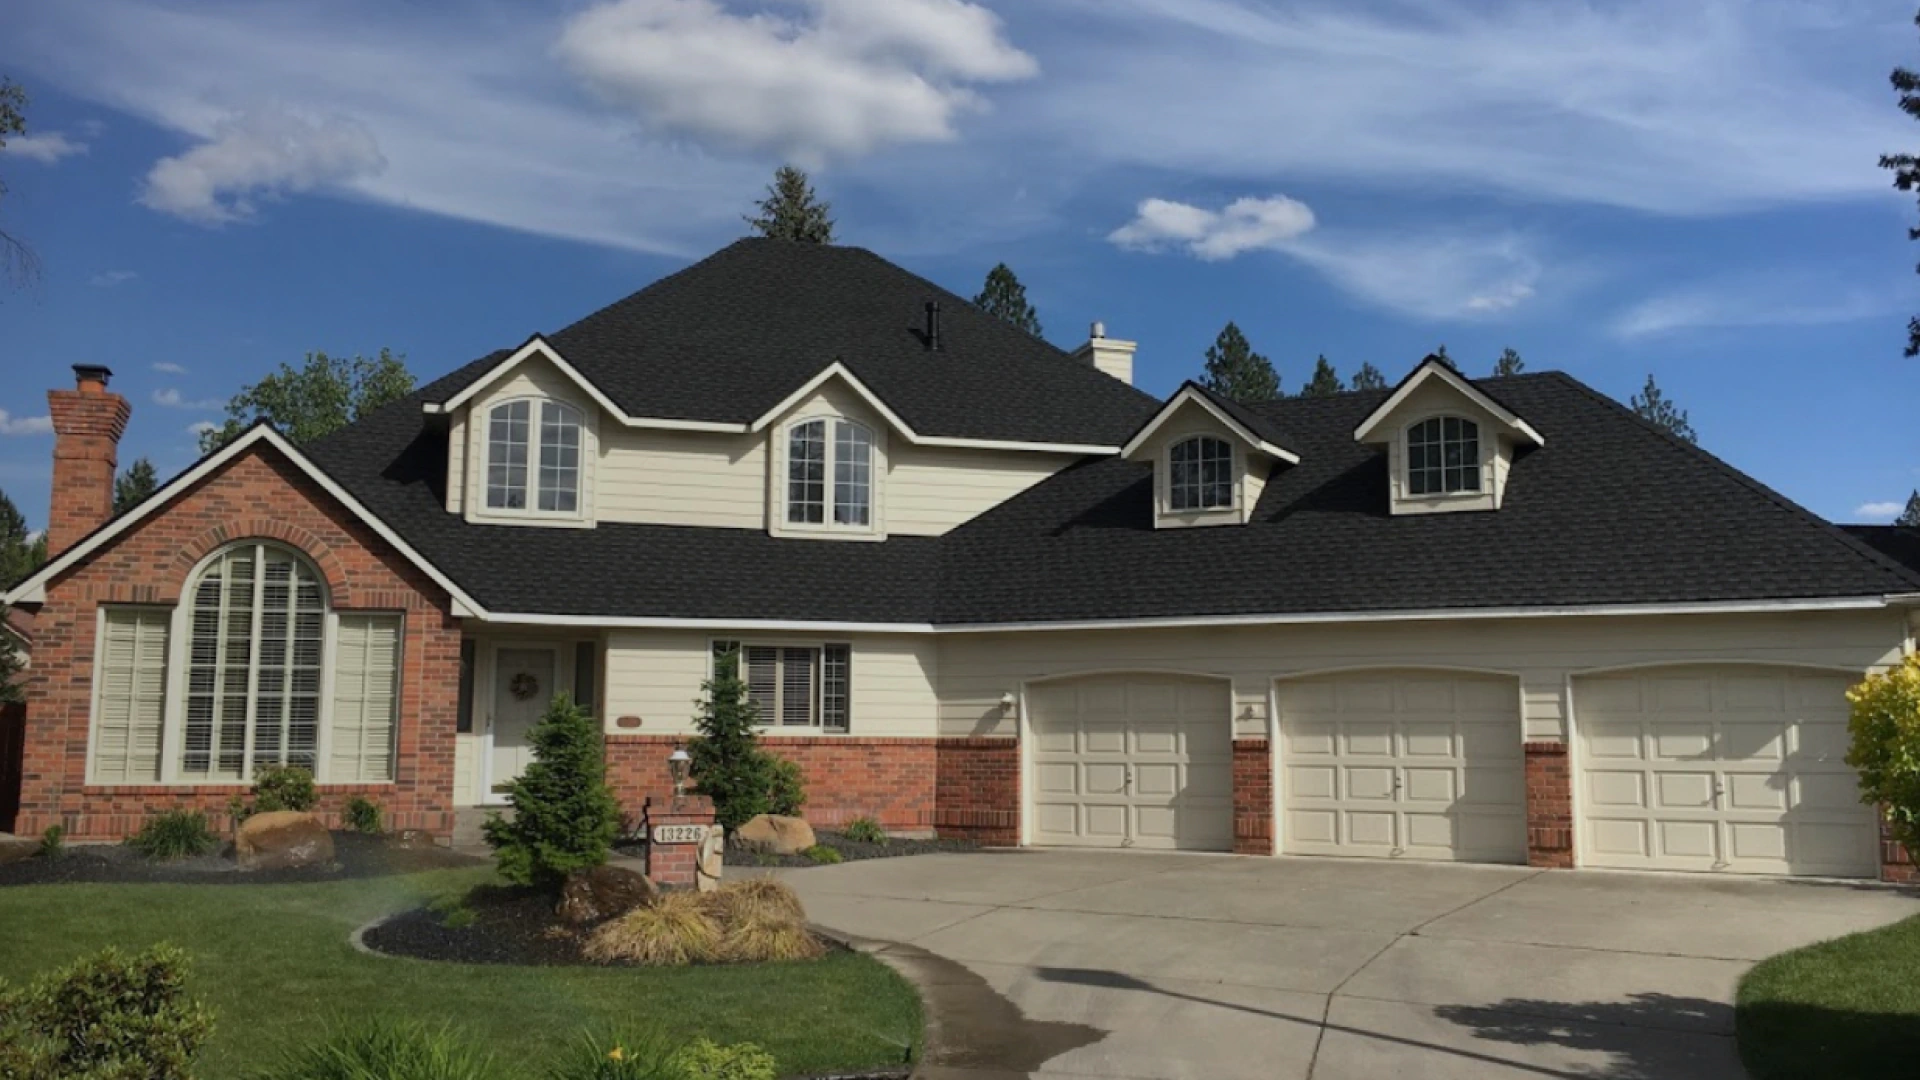 luxurious house with black asphalt roof shingle installed spokane wa